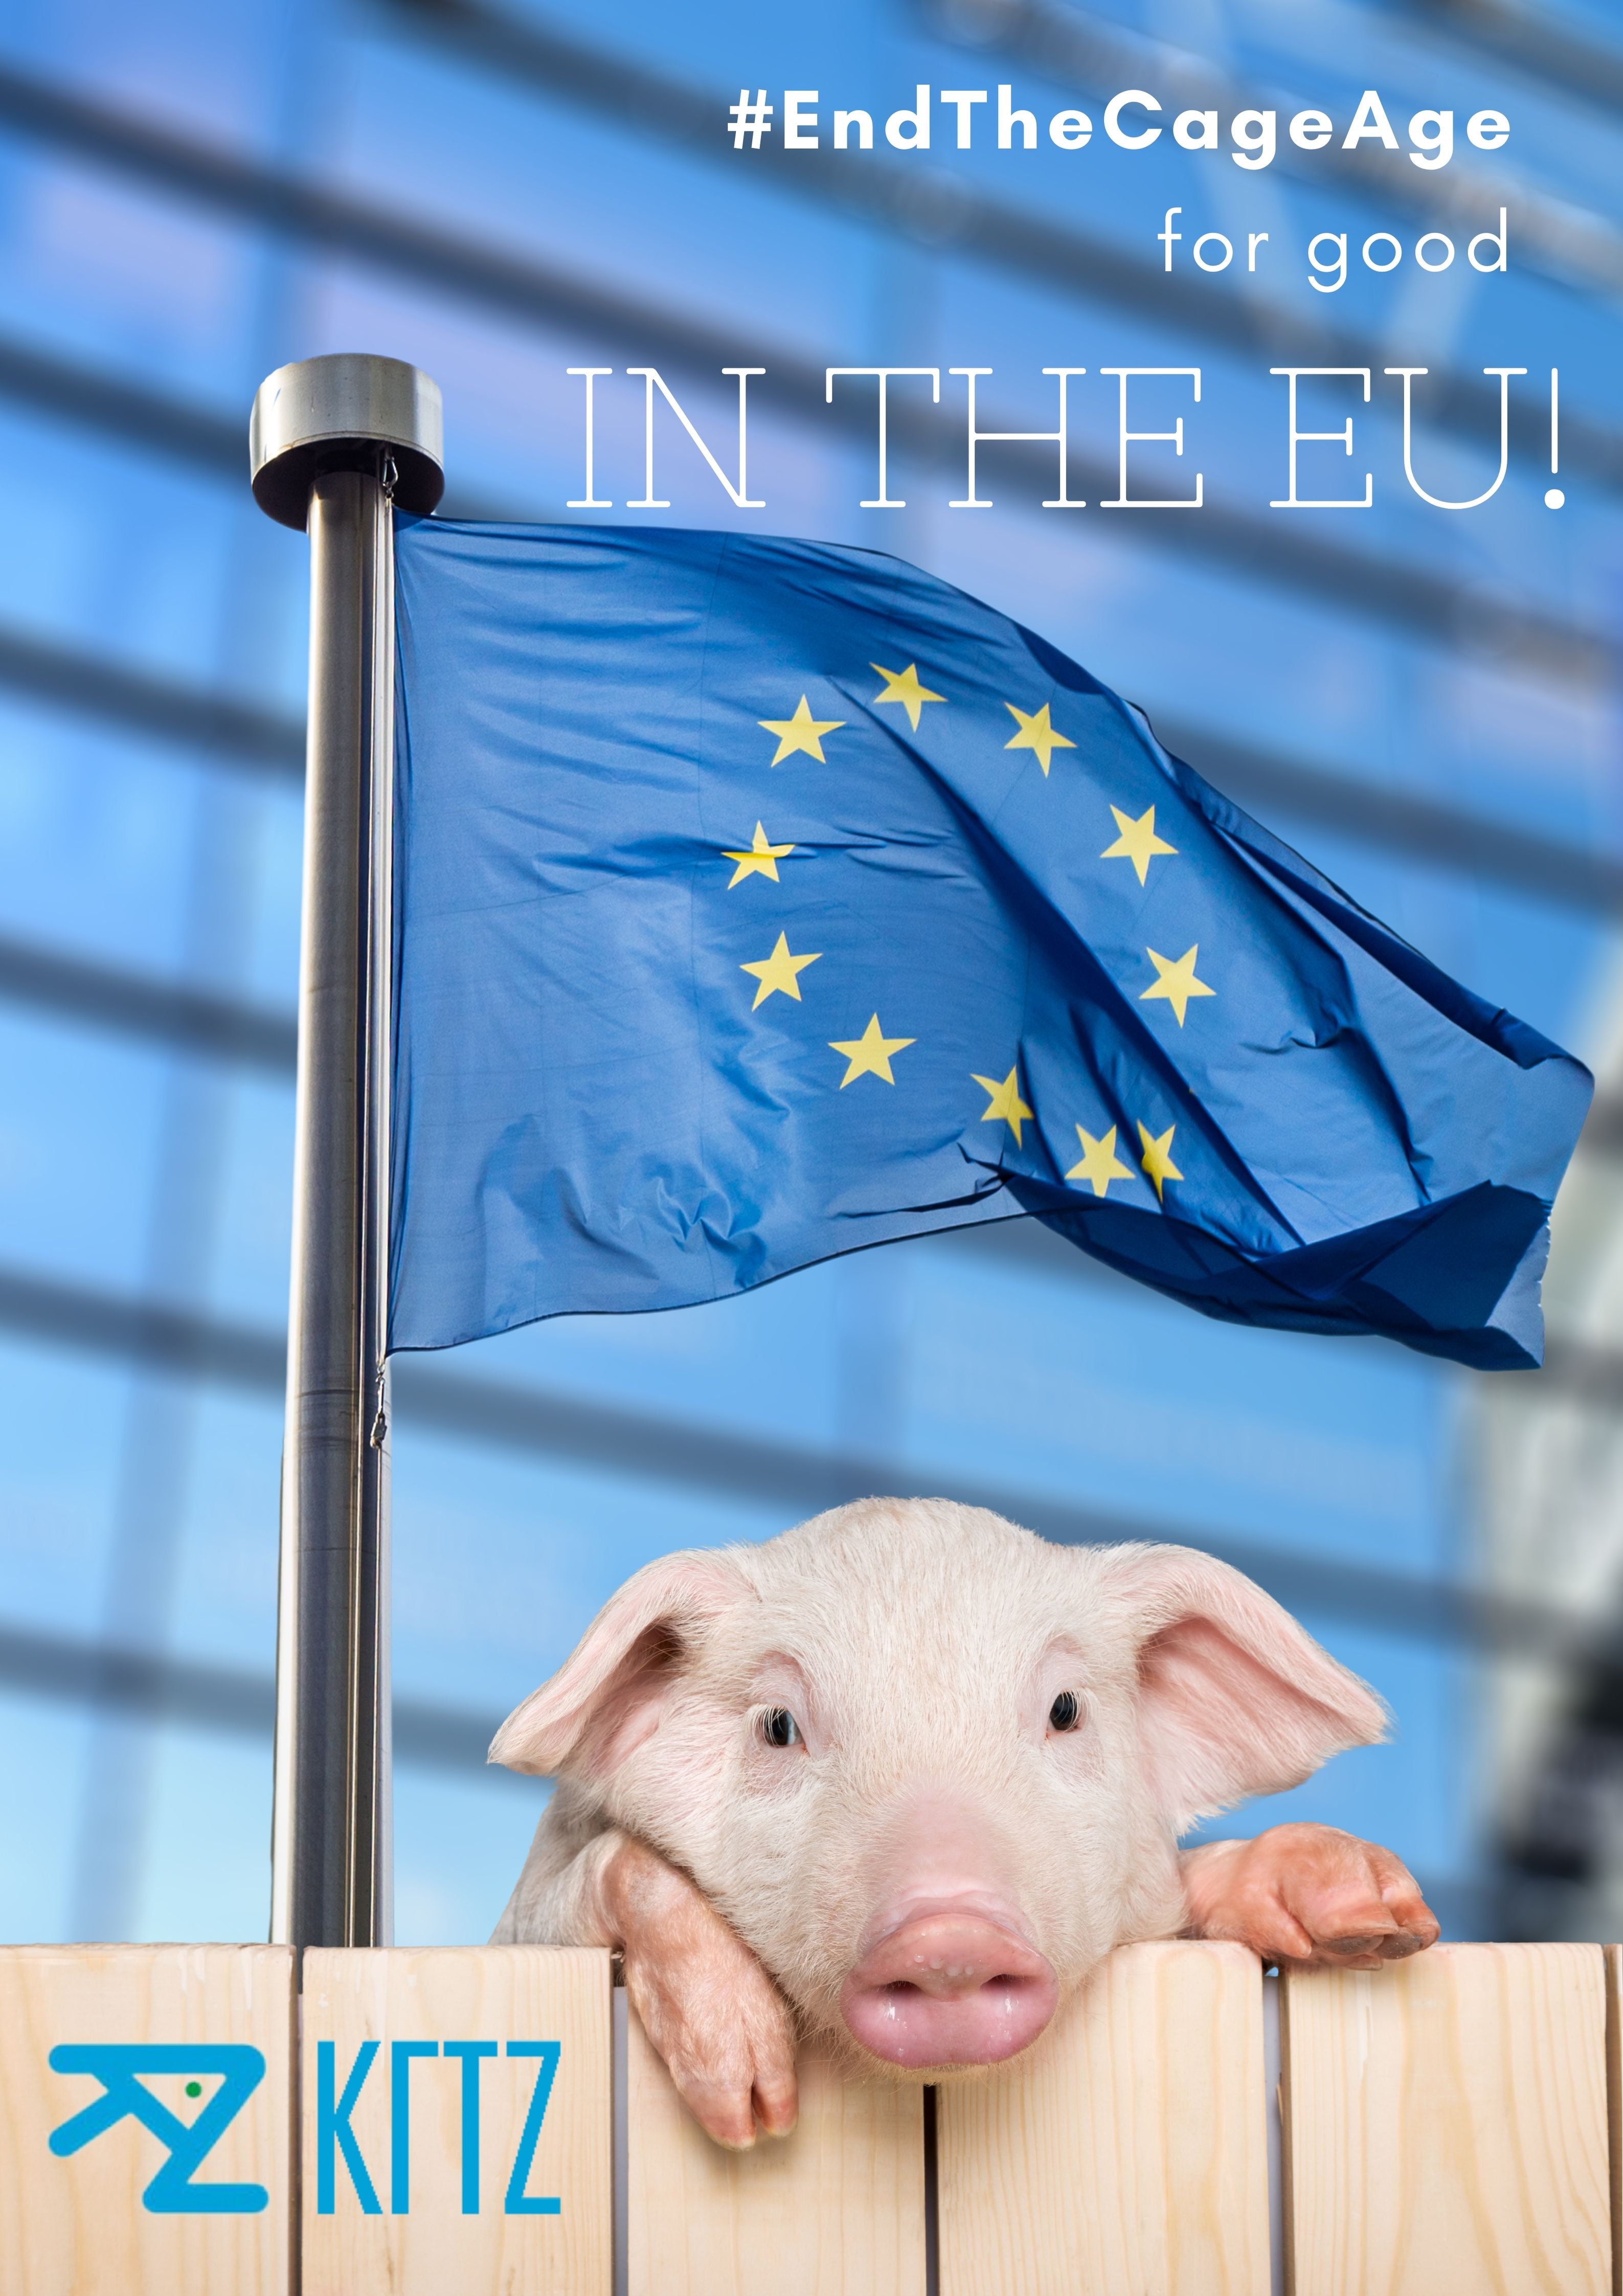 Μετά την σαρωτική έγκριση από το Ευρωπαϊκό Κοινοβούλιο, να γίνει πράξη το τέλος της εκτροφής ζώων σε κλουβιά στην ΕΕ